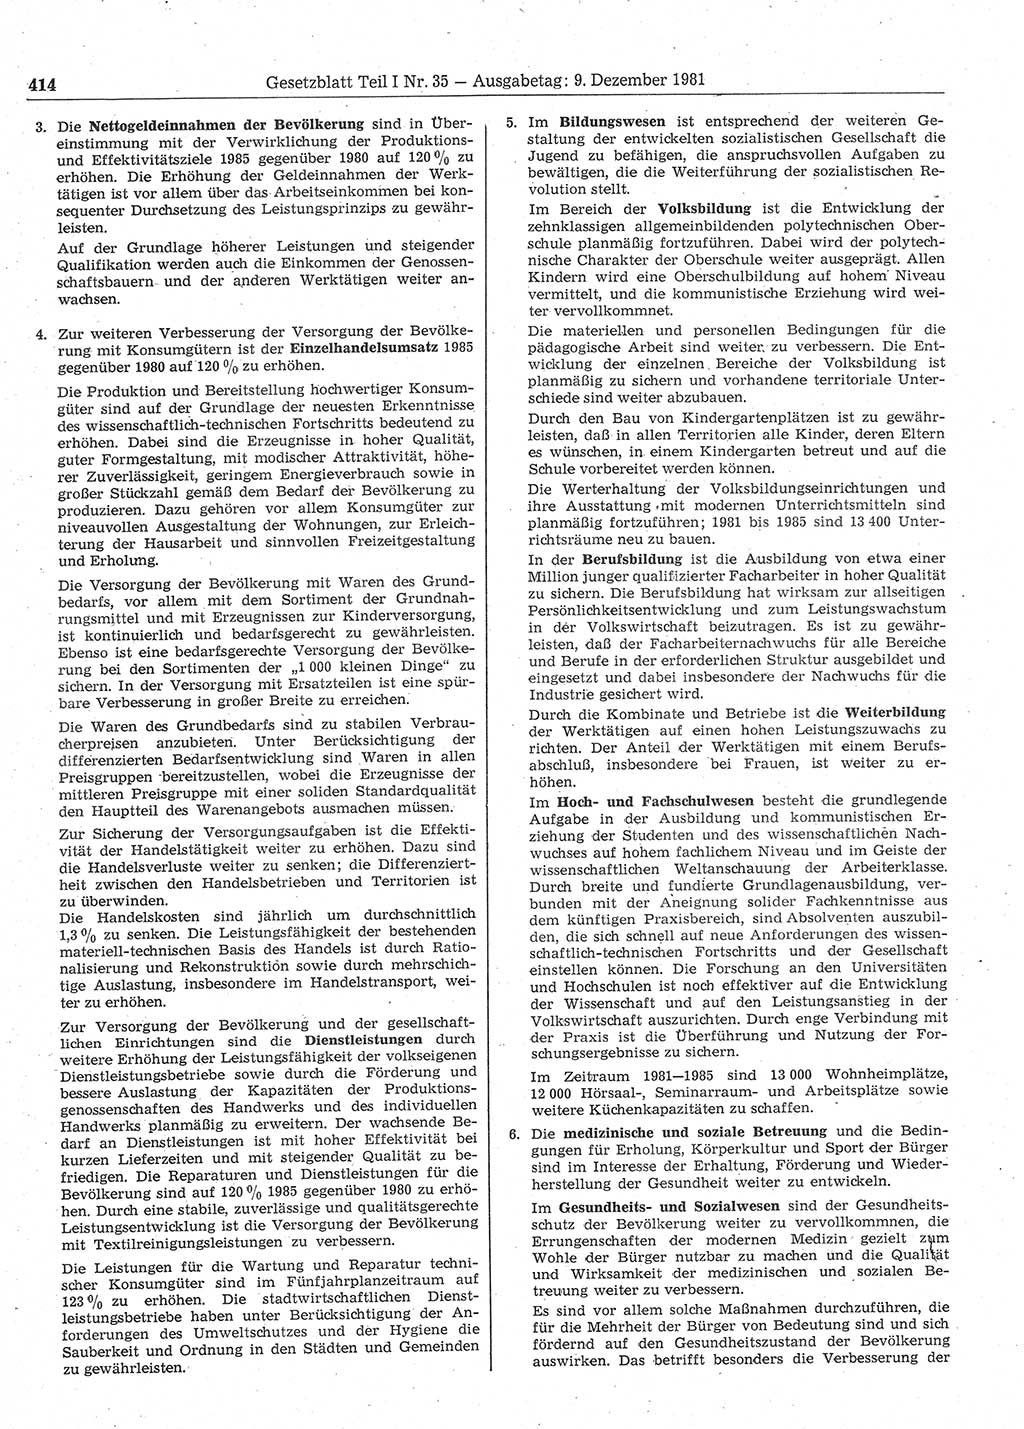 Gesetzblatt (GBl.) der Deutschen Demokratischen Republik (DDR) Teil Ⅰ 1981, Seite 414 (GBl. DDR Ⅰ 1981, S. 414)